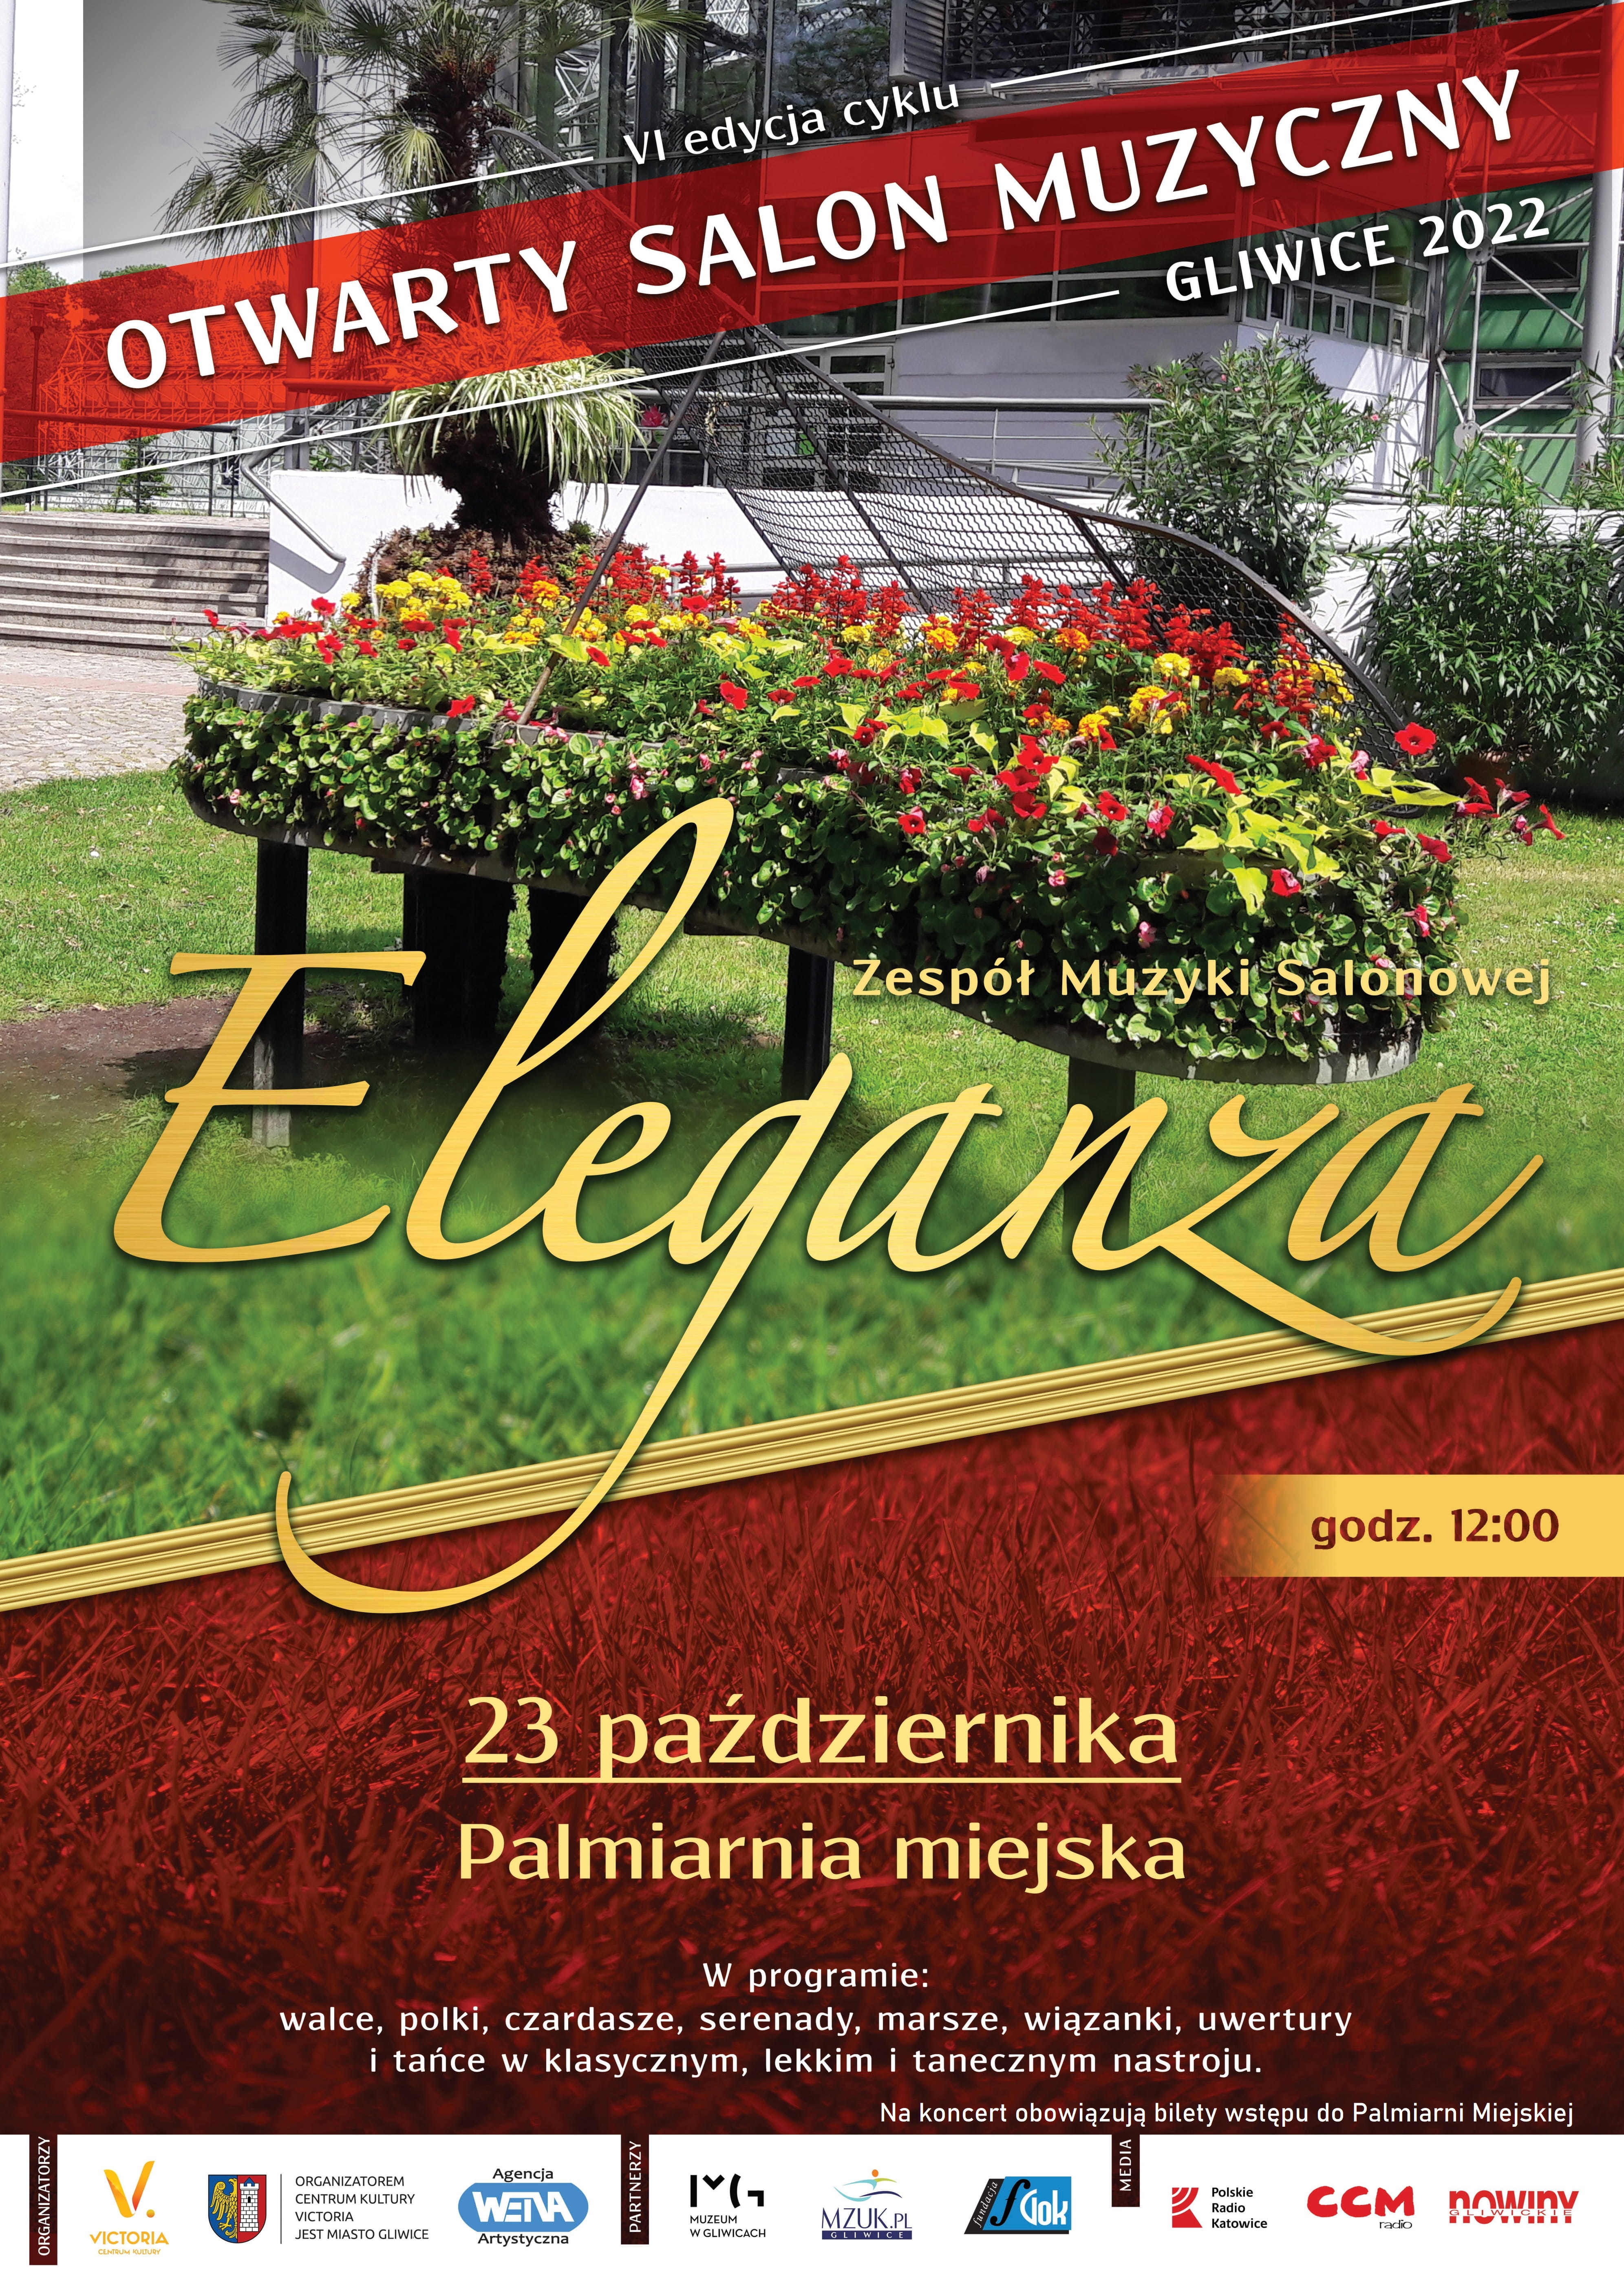 Otwarty Salon Muzyczny ELEGANZA - Palmiarnia 